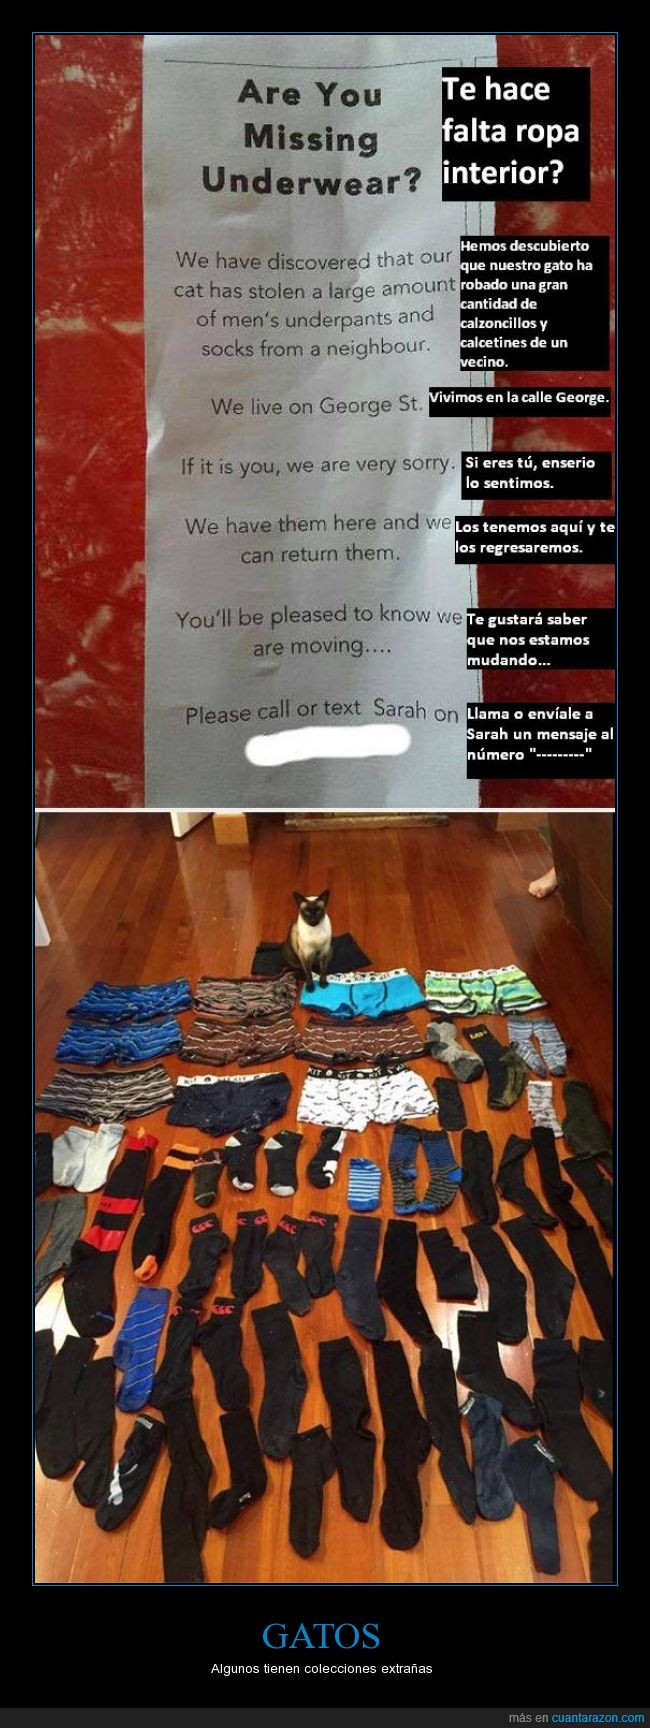 gato,extraño,collecionar,calcetines,calzoncillos,genial,ropa interior,robar,ladron,mudar